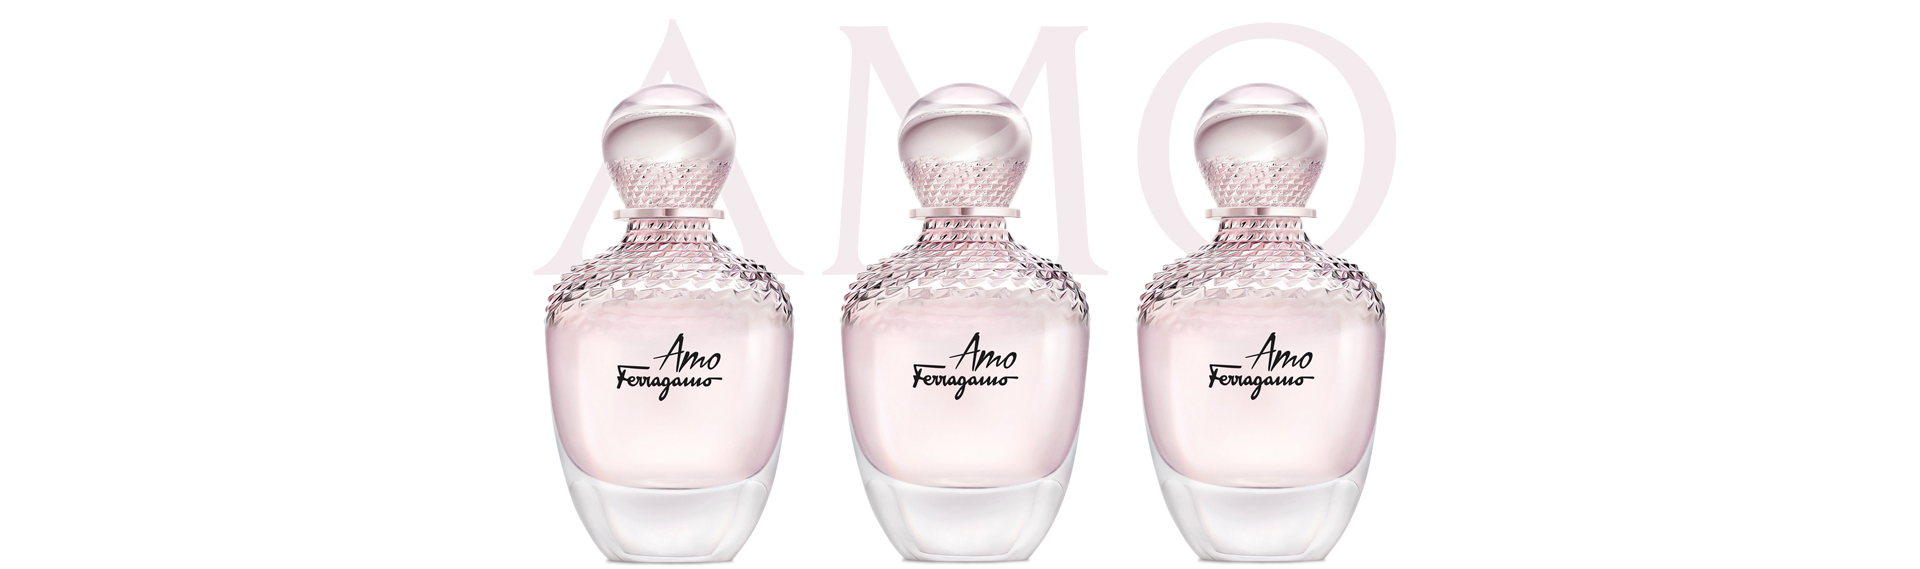 Montage de trois flacons du parfum féminin Amo de Ferragamo